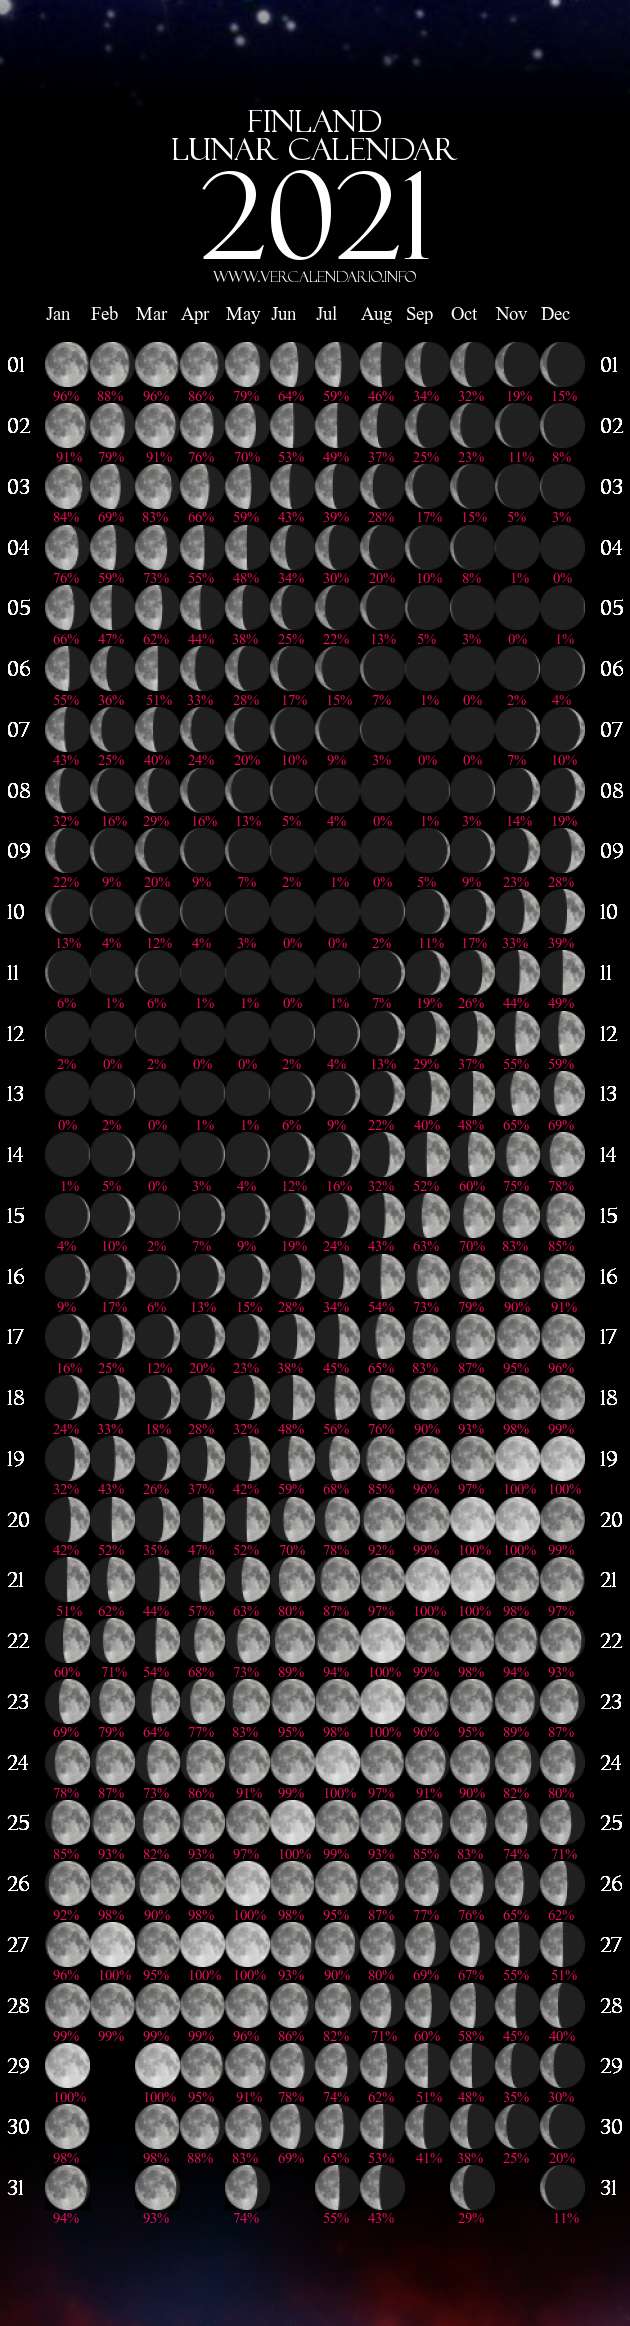 calendar 2021 with moon phases Lunar Calendar 2021 Finland calendar 2021 with moon phases